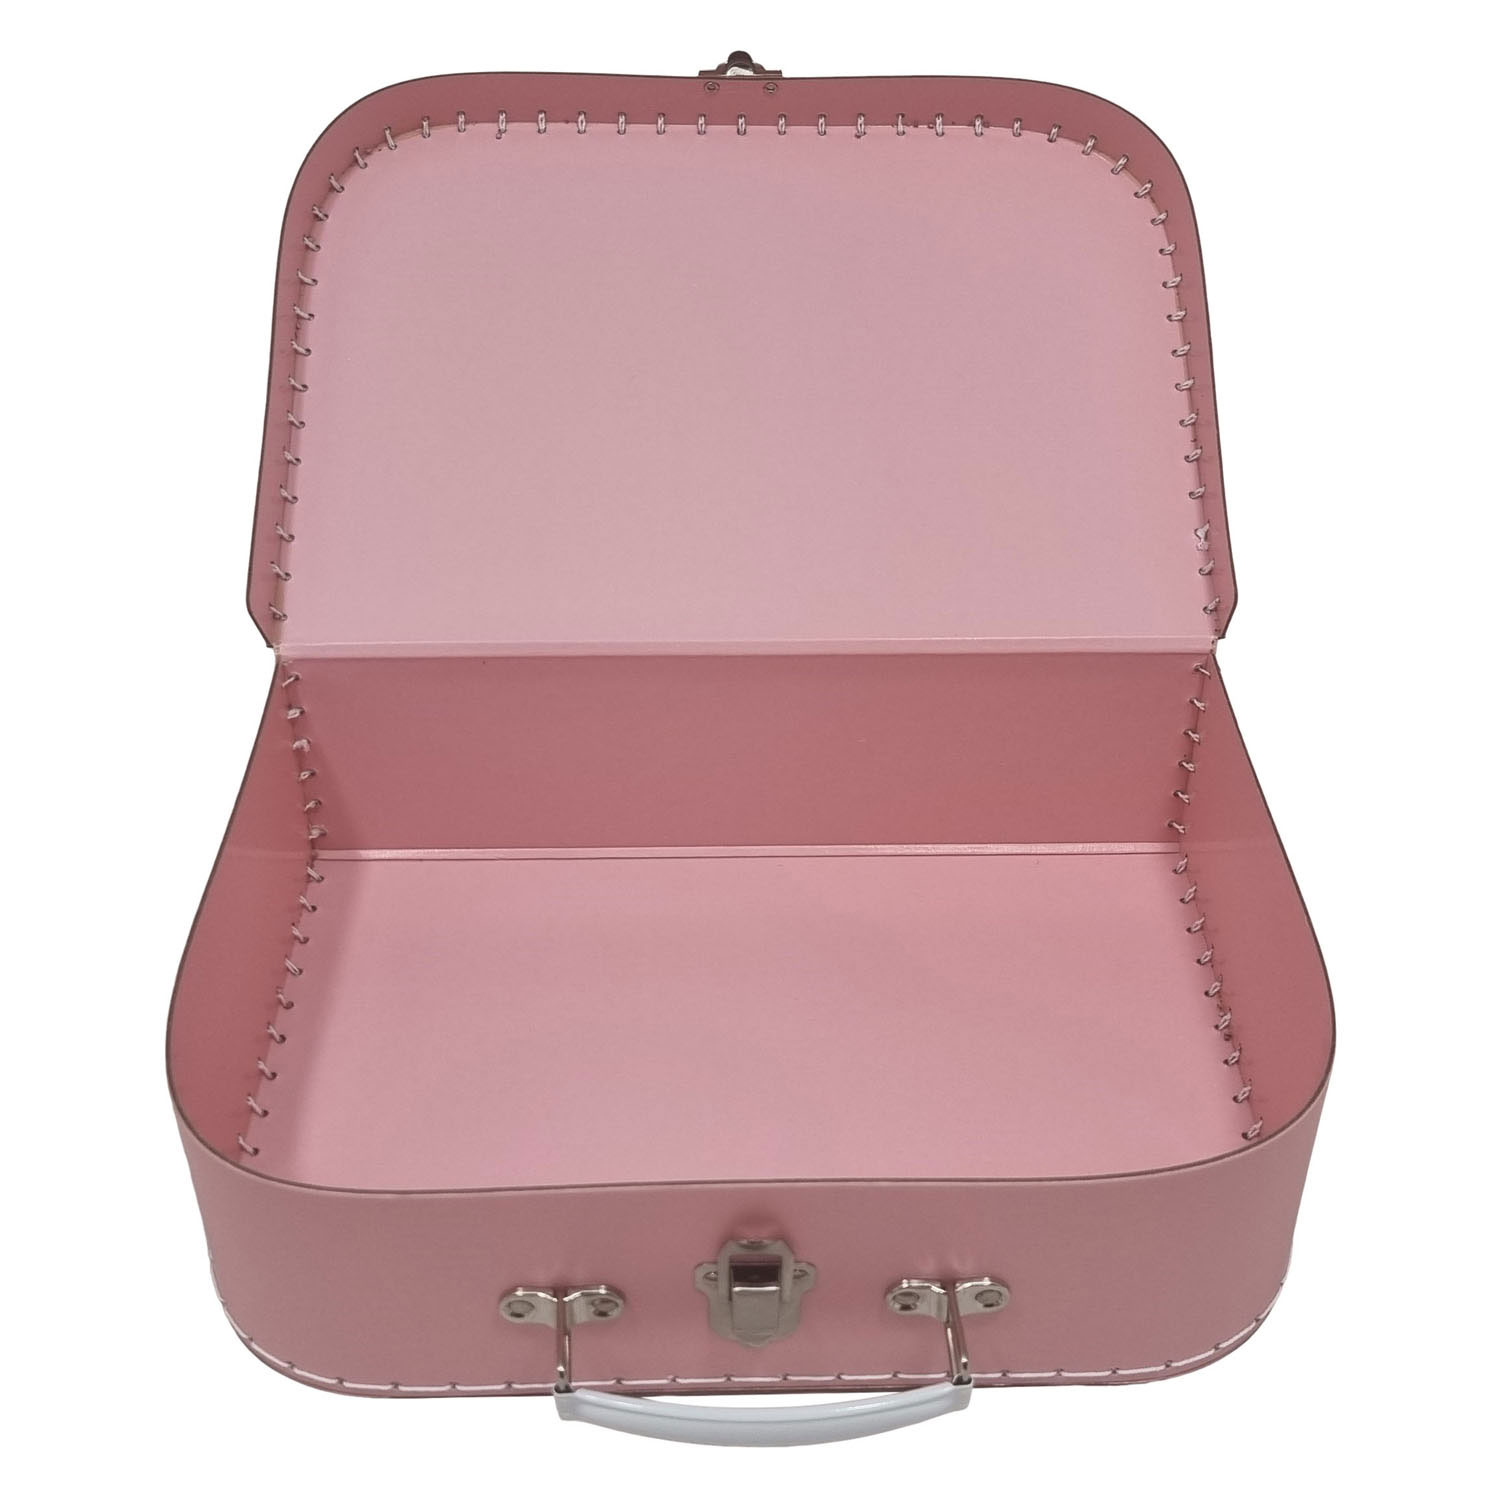 Kartonkoffer-Set Pink, 3tlg.